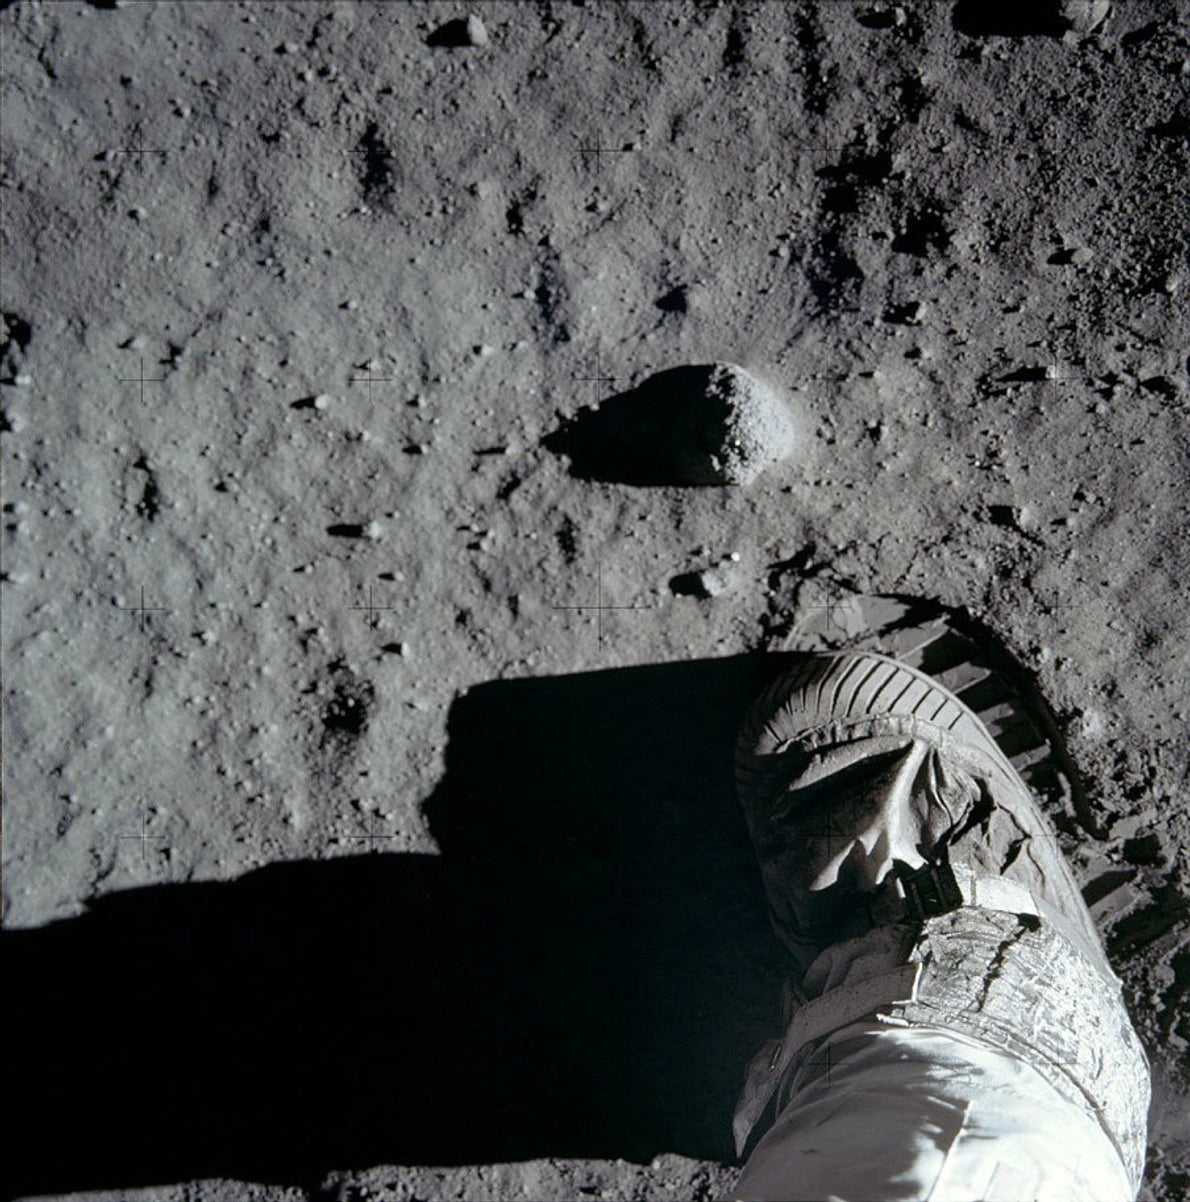 astronaut boot on the moon